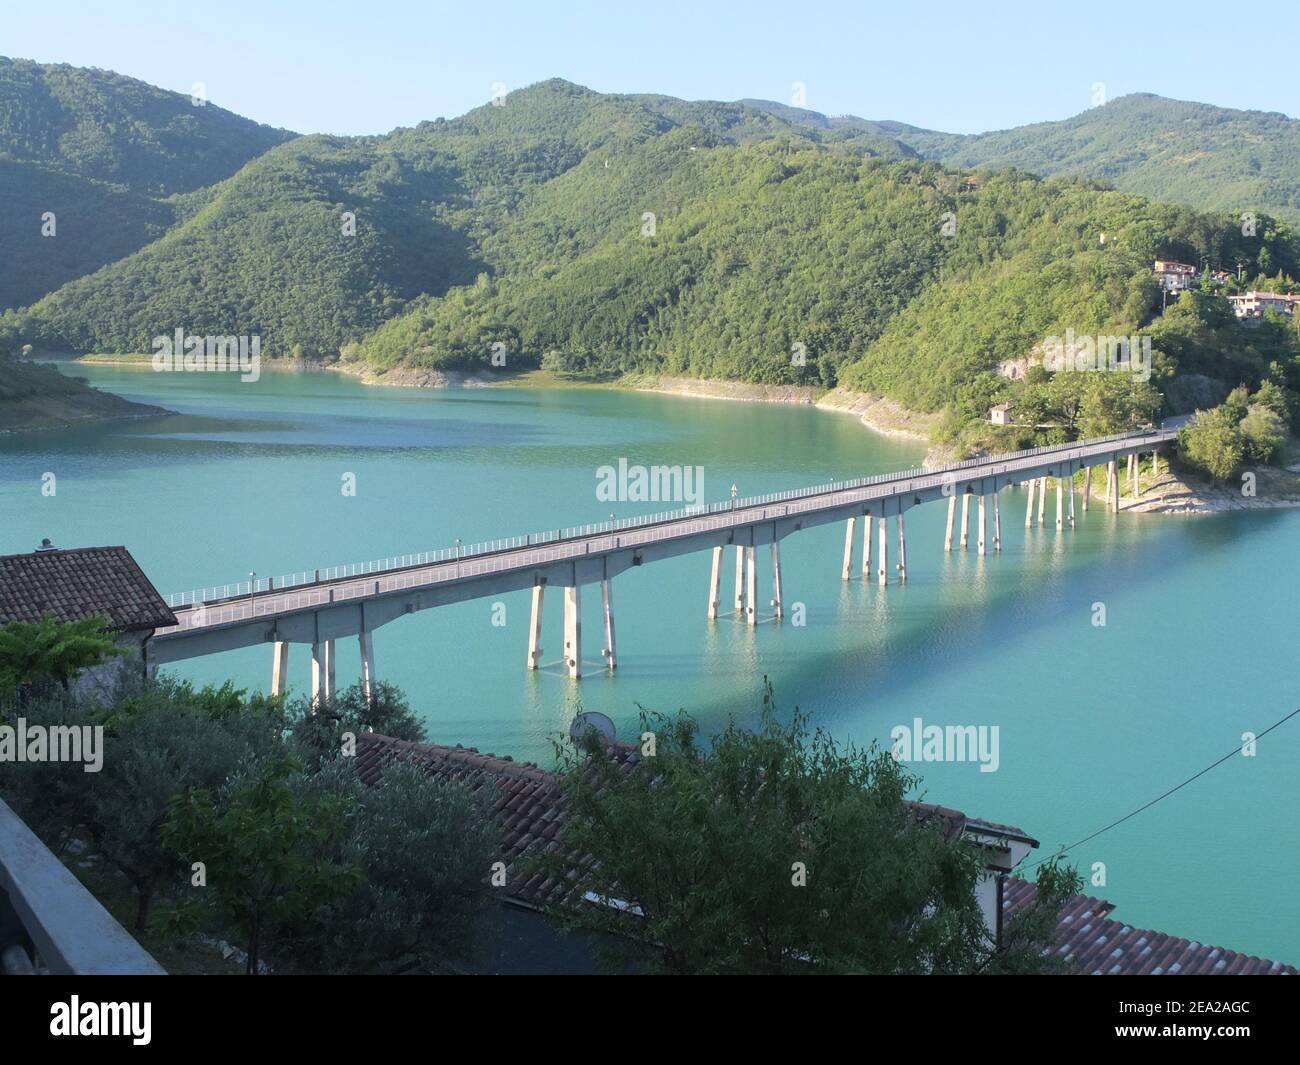 Bridge over artificial lake Lago di Torano, Castel de Tora, Lazio, Italy Stock Photo